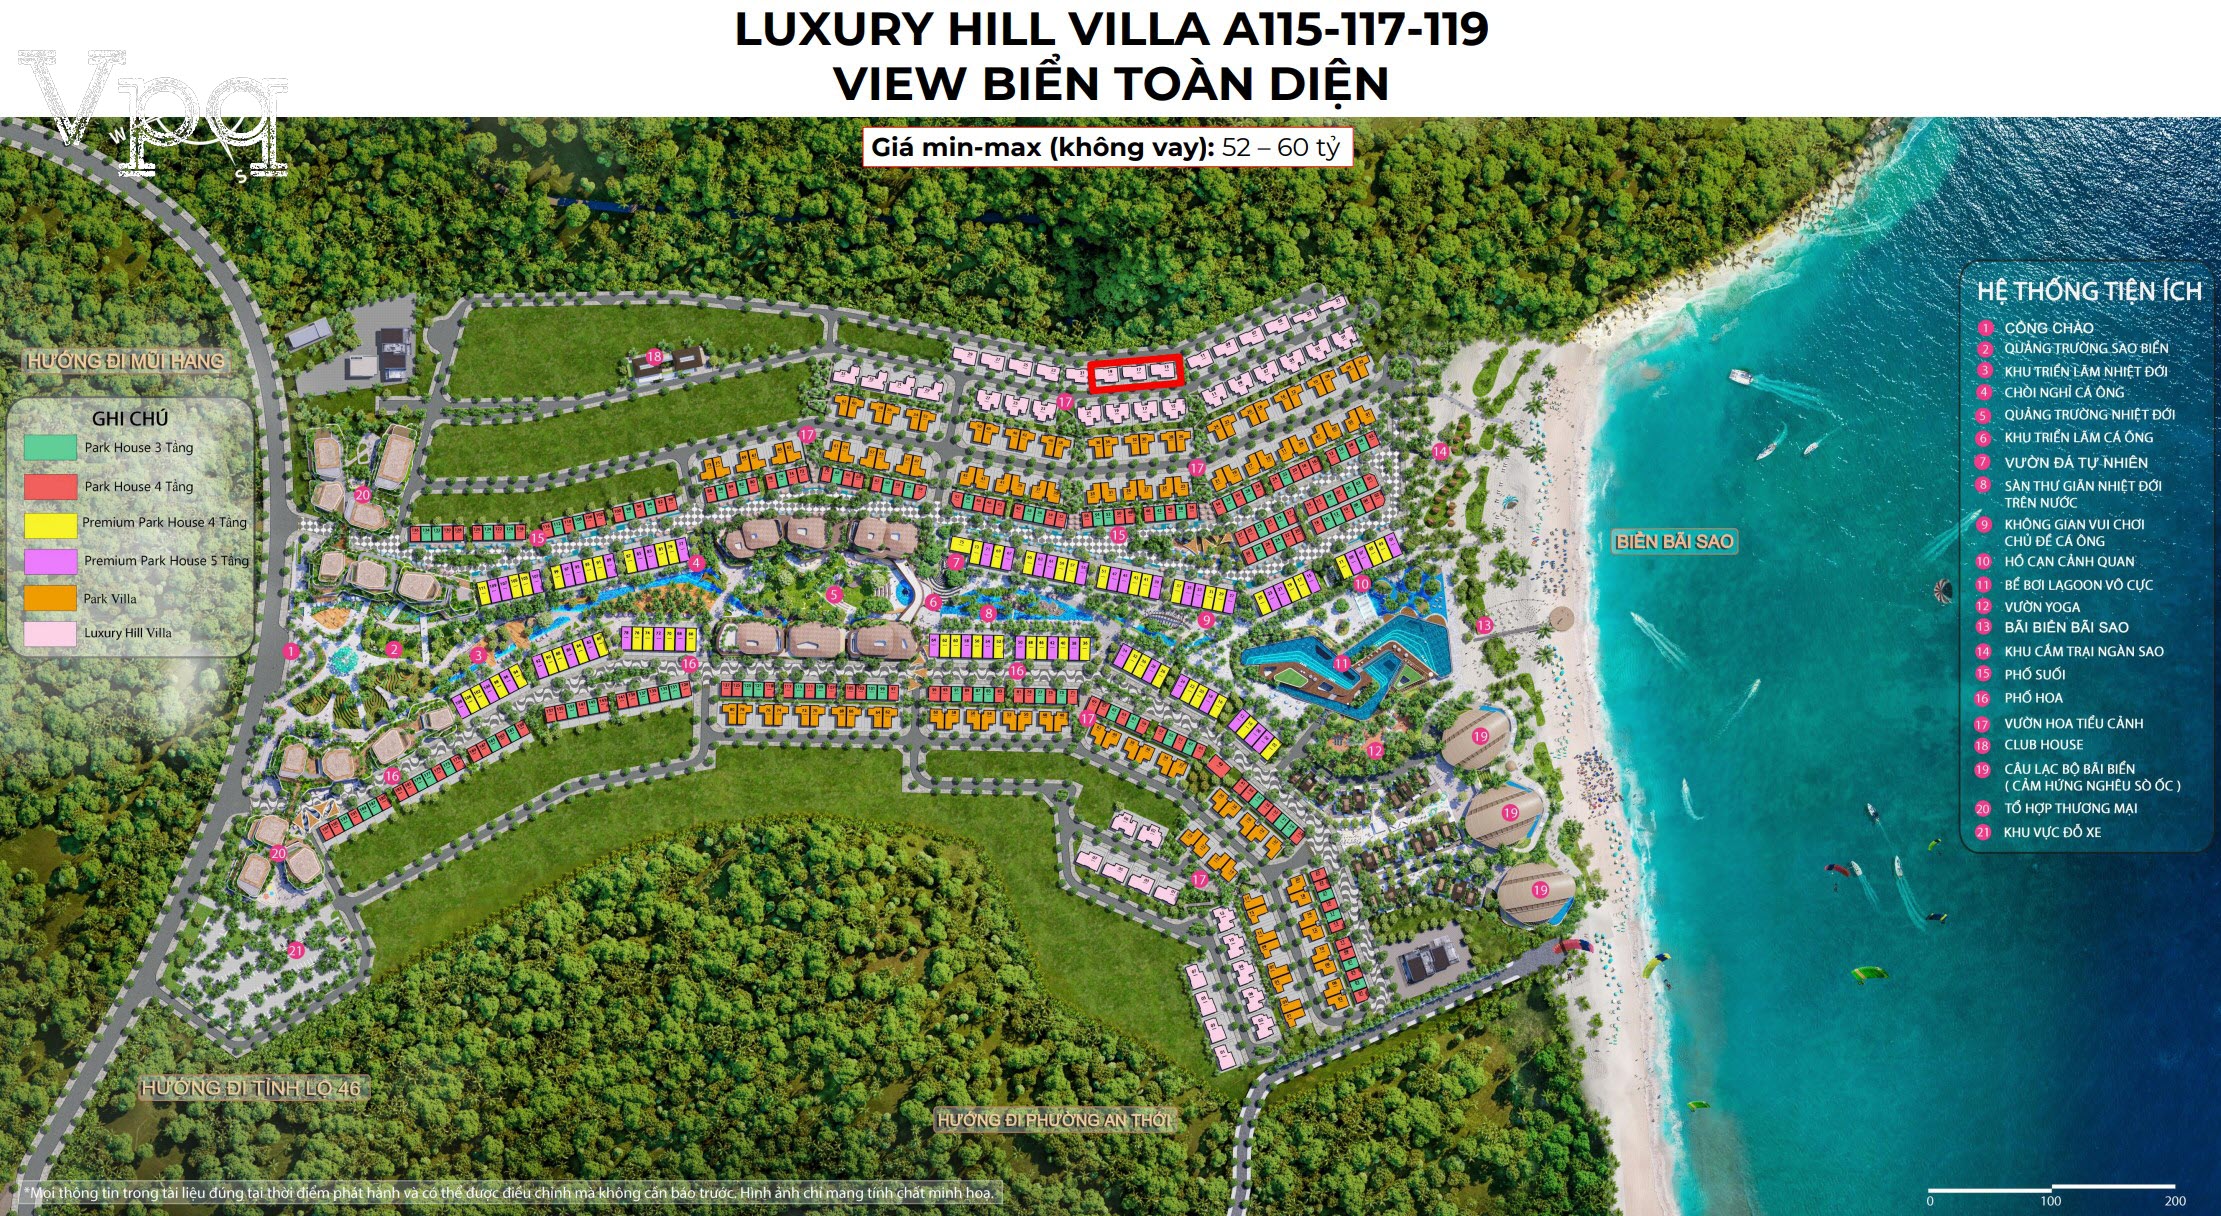 Giá Luxury Hill Villa A115-A117-A119